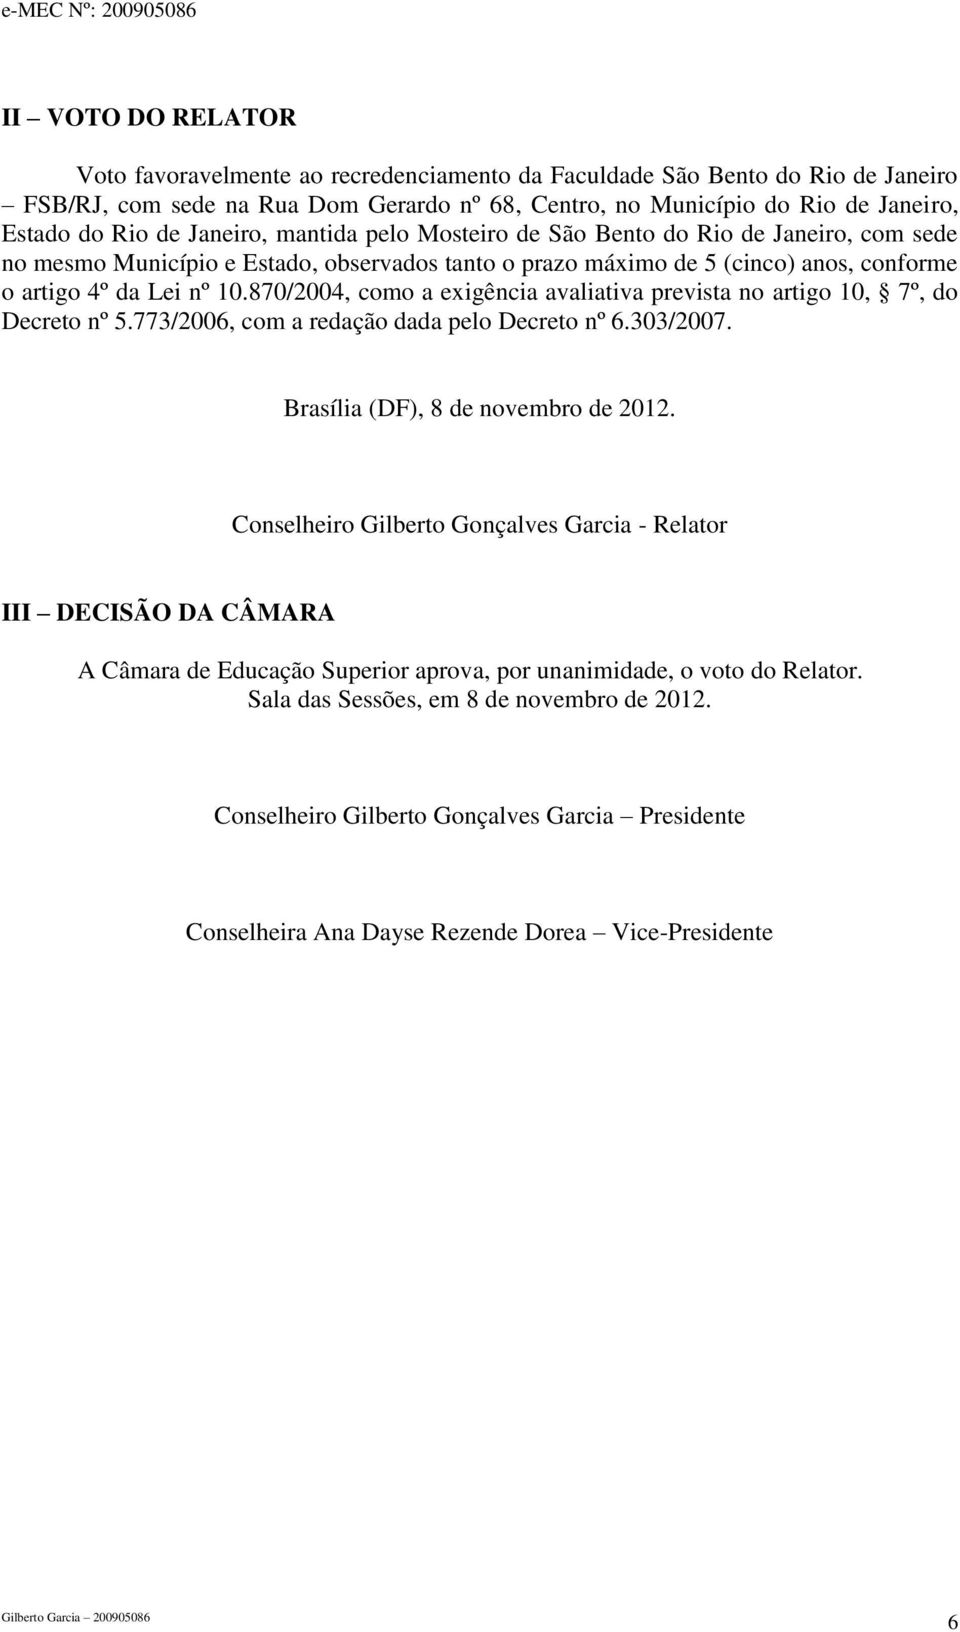 870/2004, como a exigência avaliativa prevista no artigo 10, 7º, do Decreto nº 5.773/2006, com a redação dada pelo Decreto nº 6.303/2007. Brasília (DF), 8 de novembro de 2012.